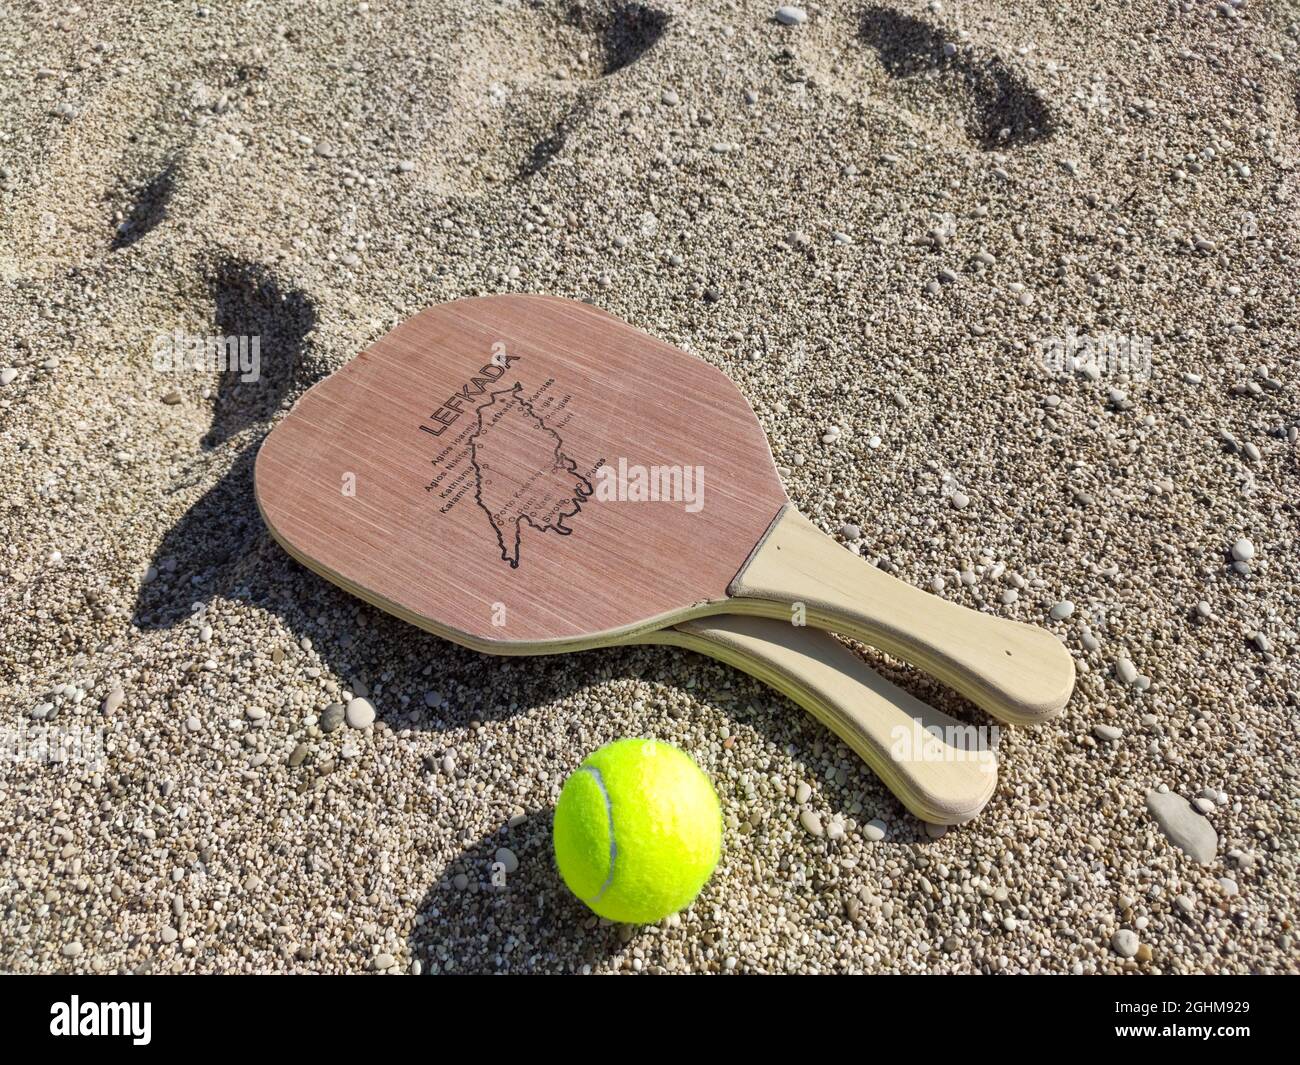 Matkot griechisches Paddle Beach Tennis Spiel mit Ball und Holzschlägern mit Karte der Insel Lefkada. Sportausrüstung am Sandstrand in Griechenland Stockfoto